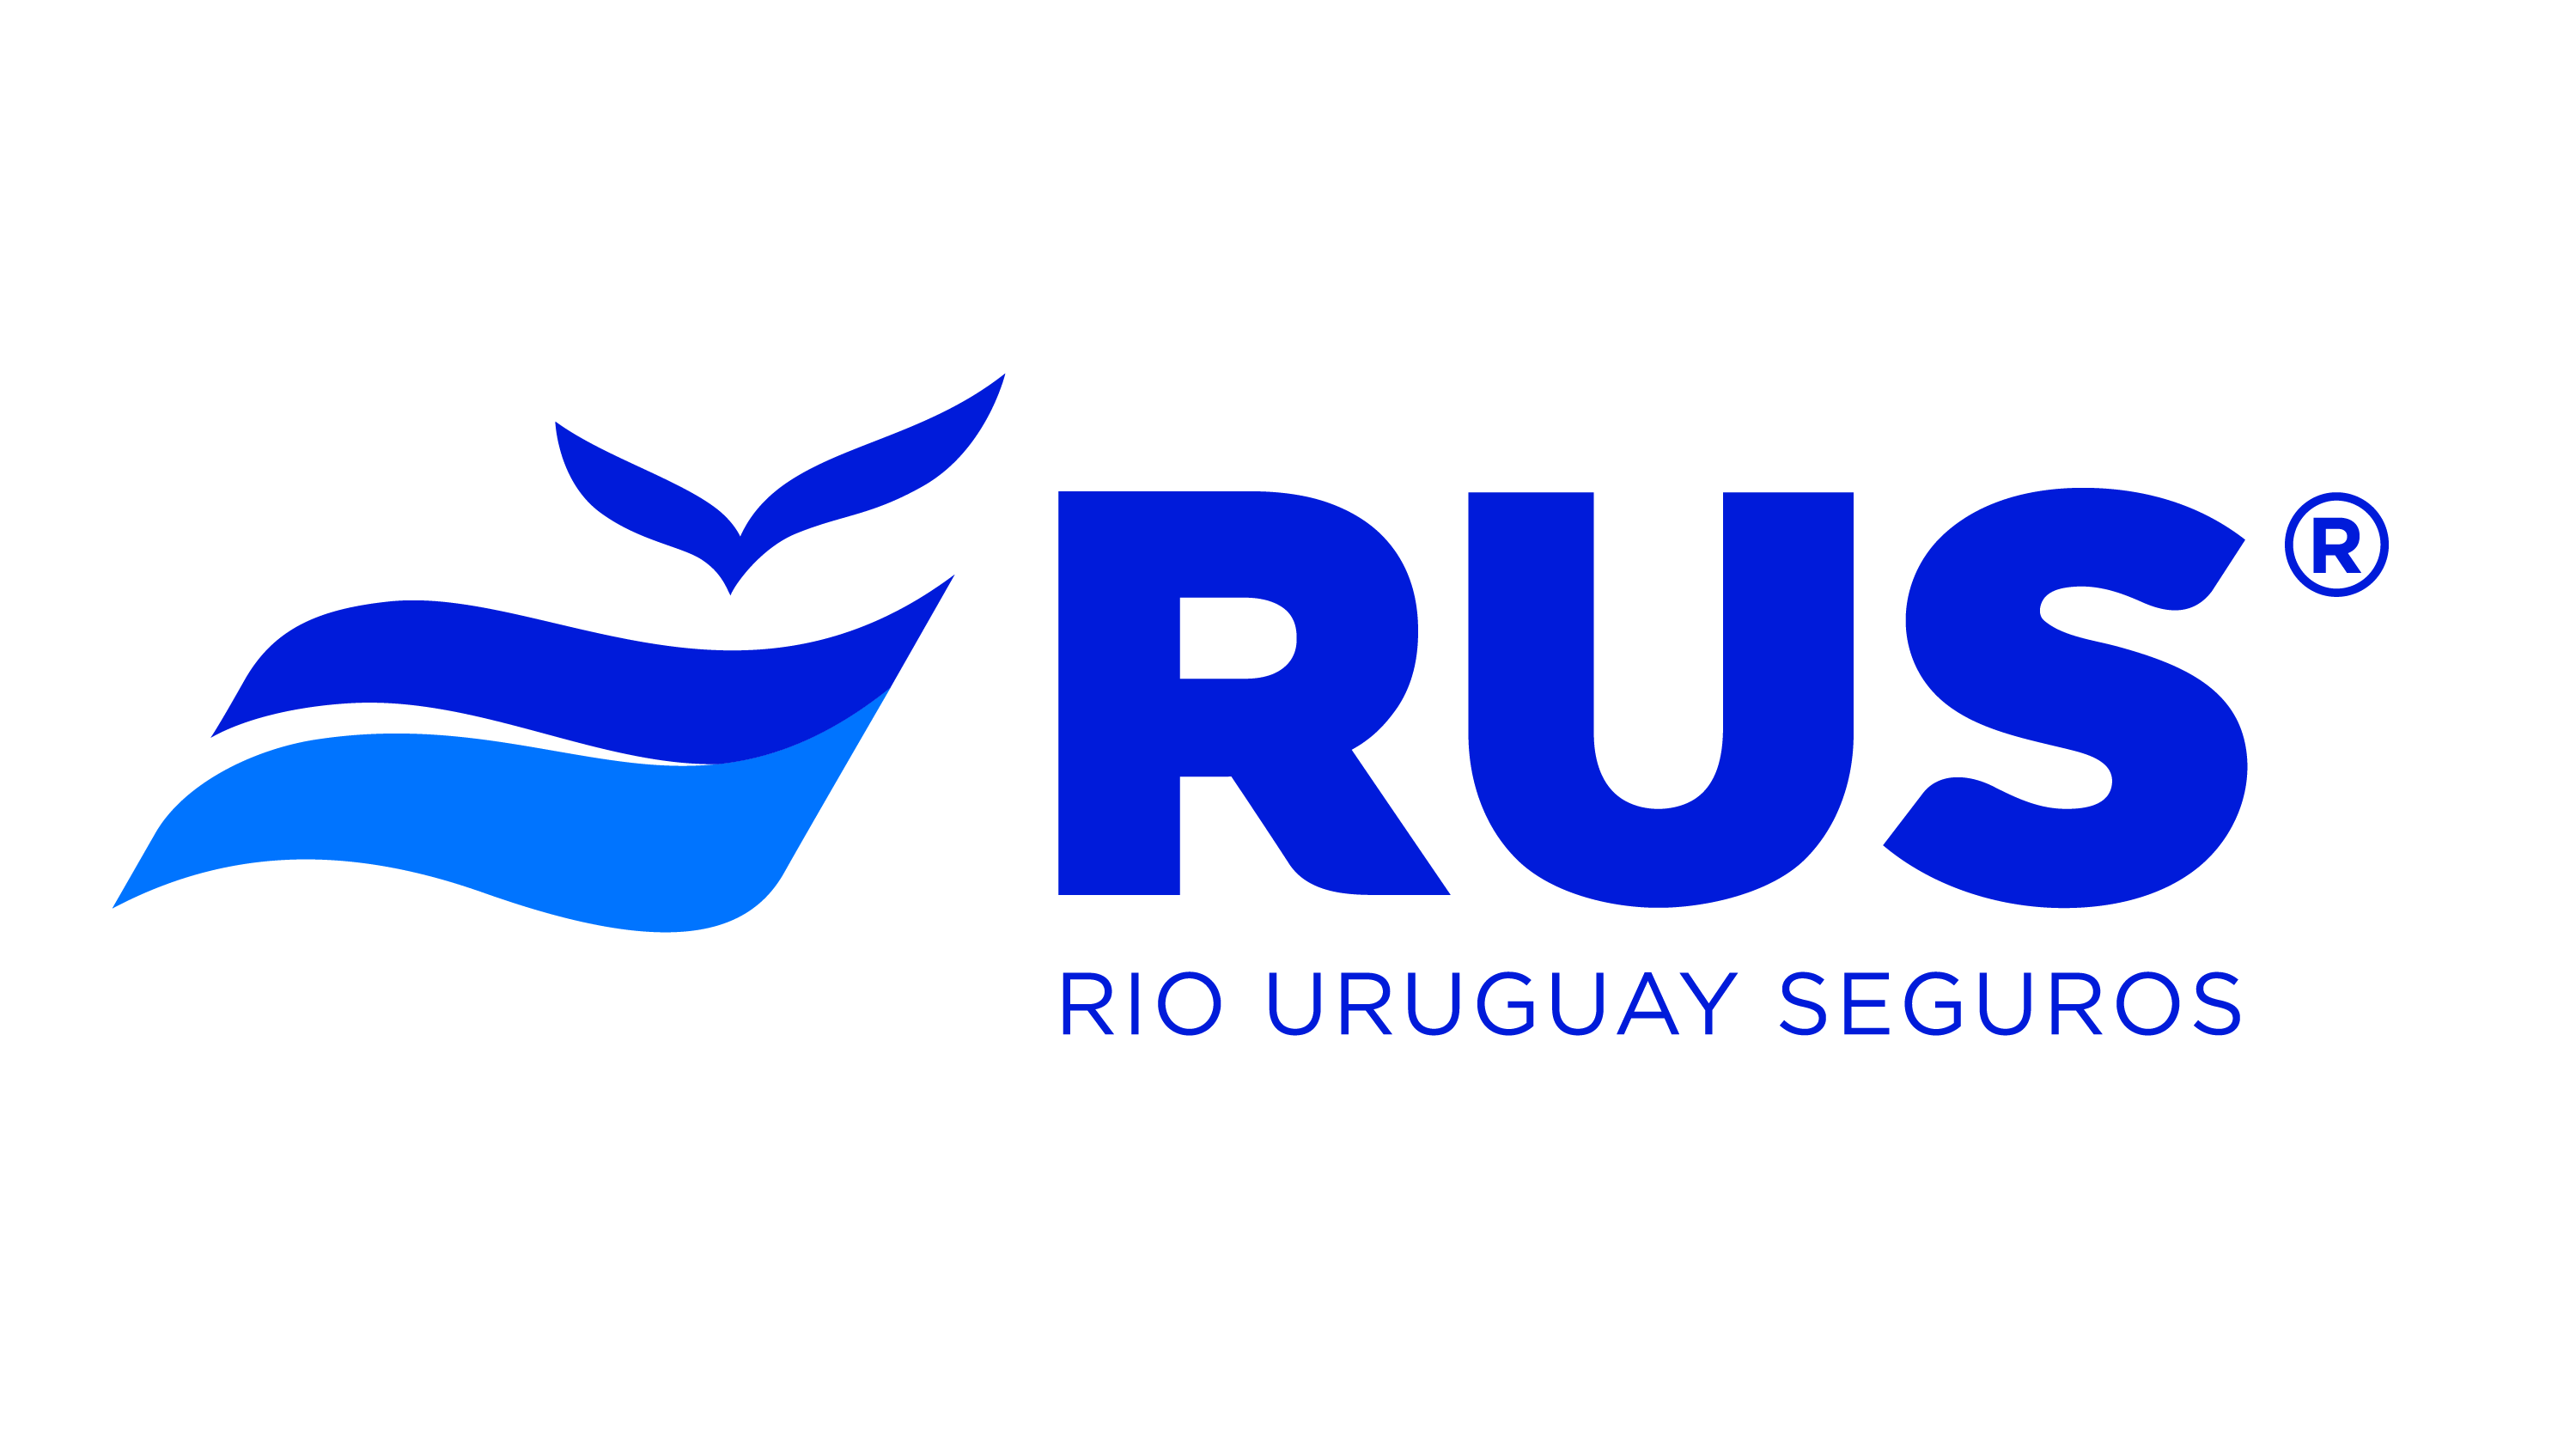 Rio Uruguay Seguros